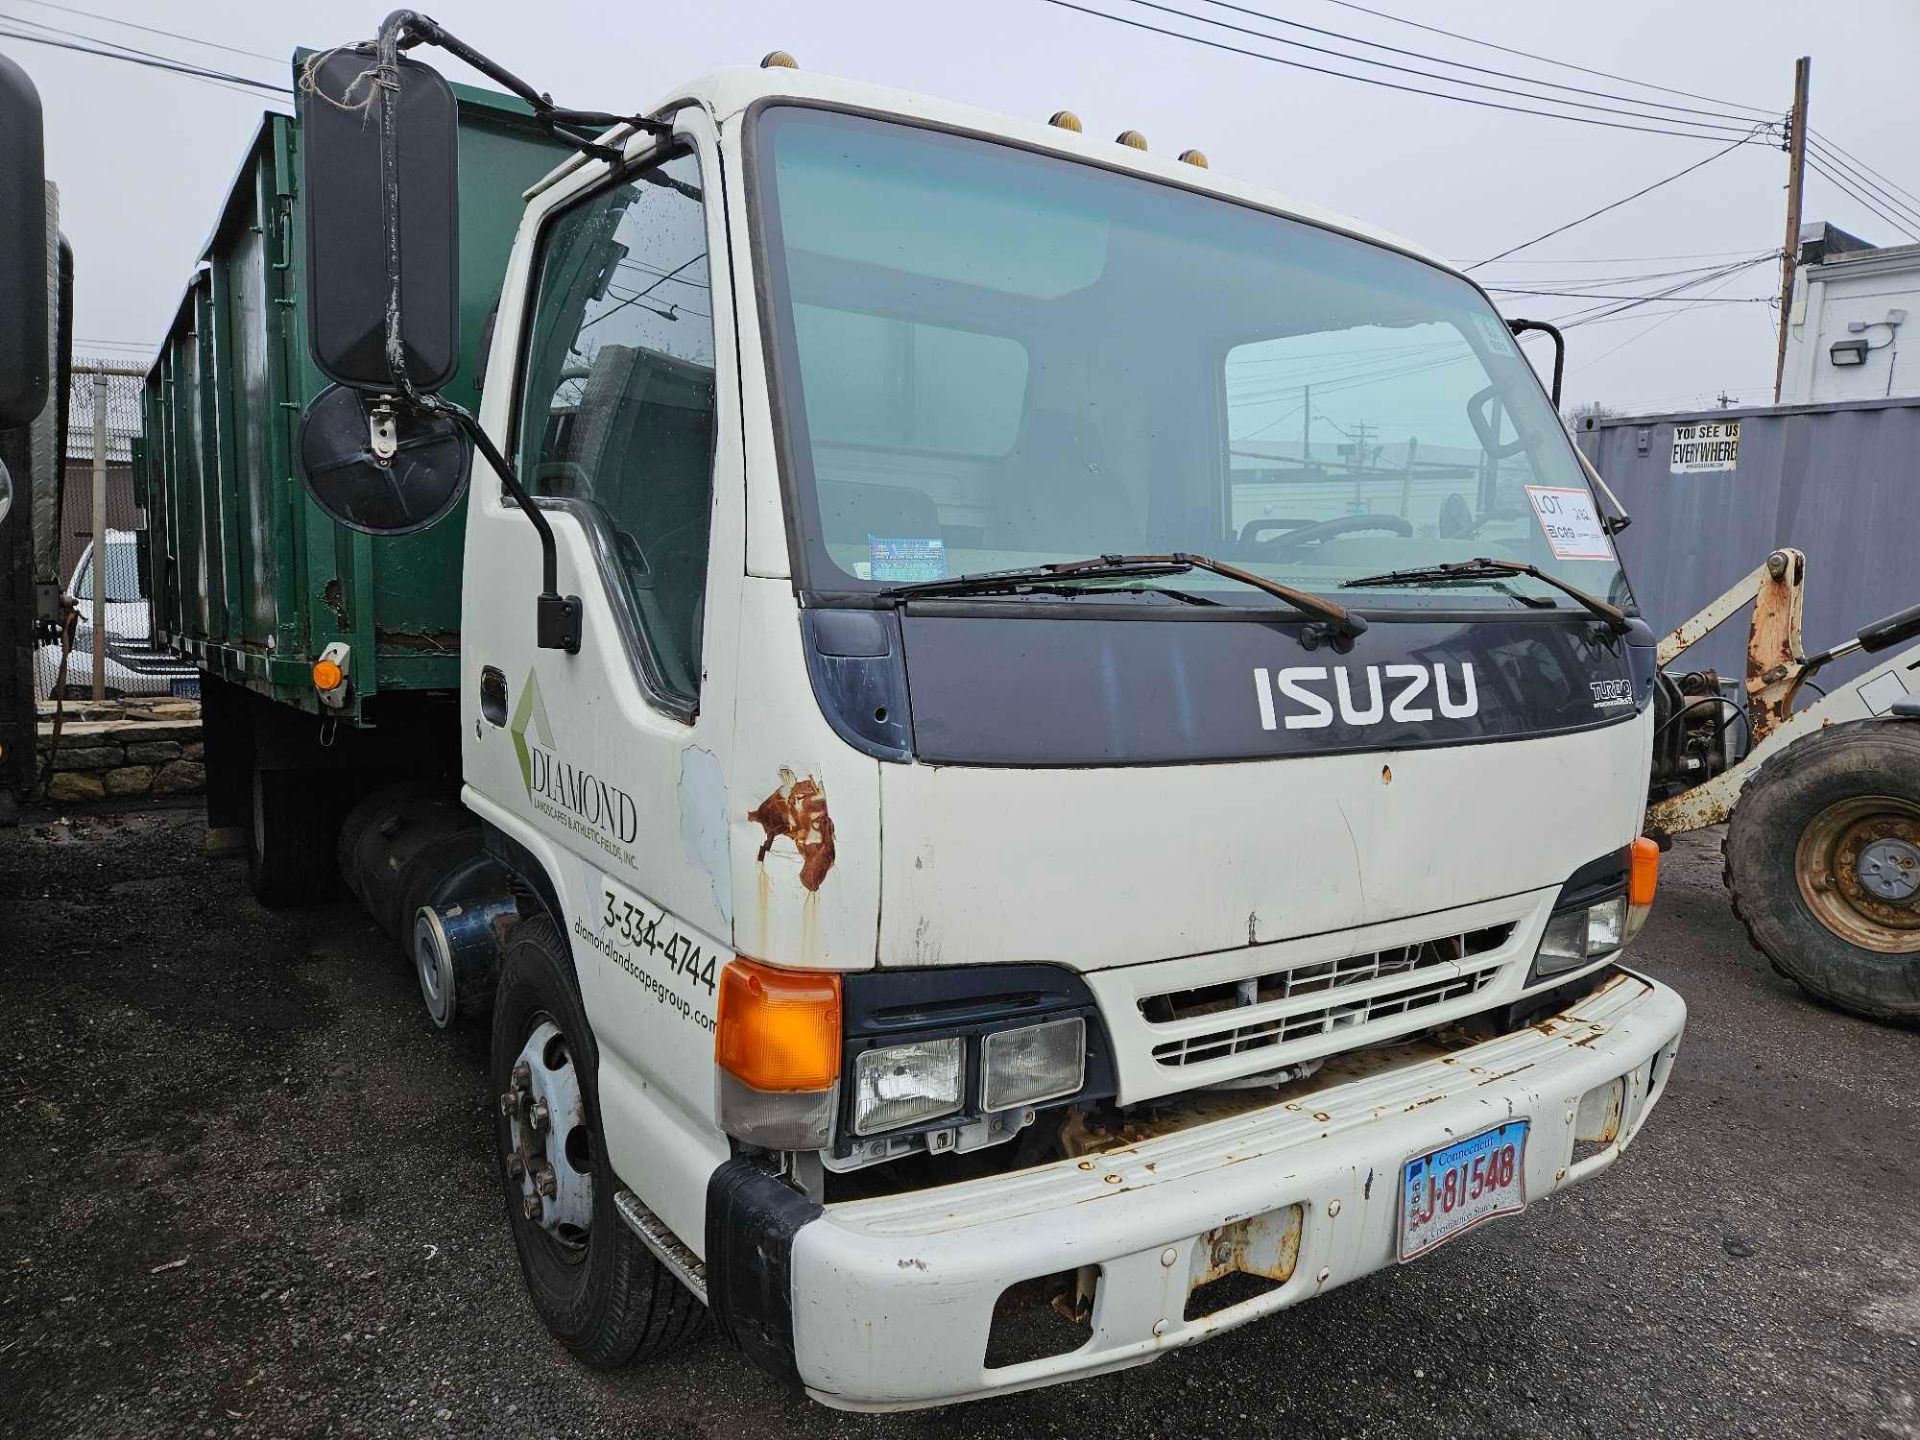 1995 Isuzu NPR Diesel Dump Truck - Image 2 of 6